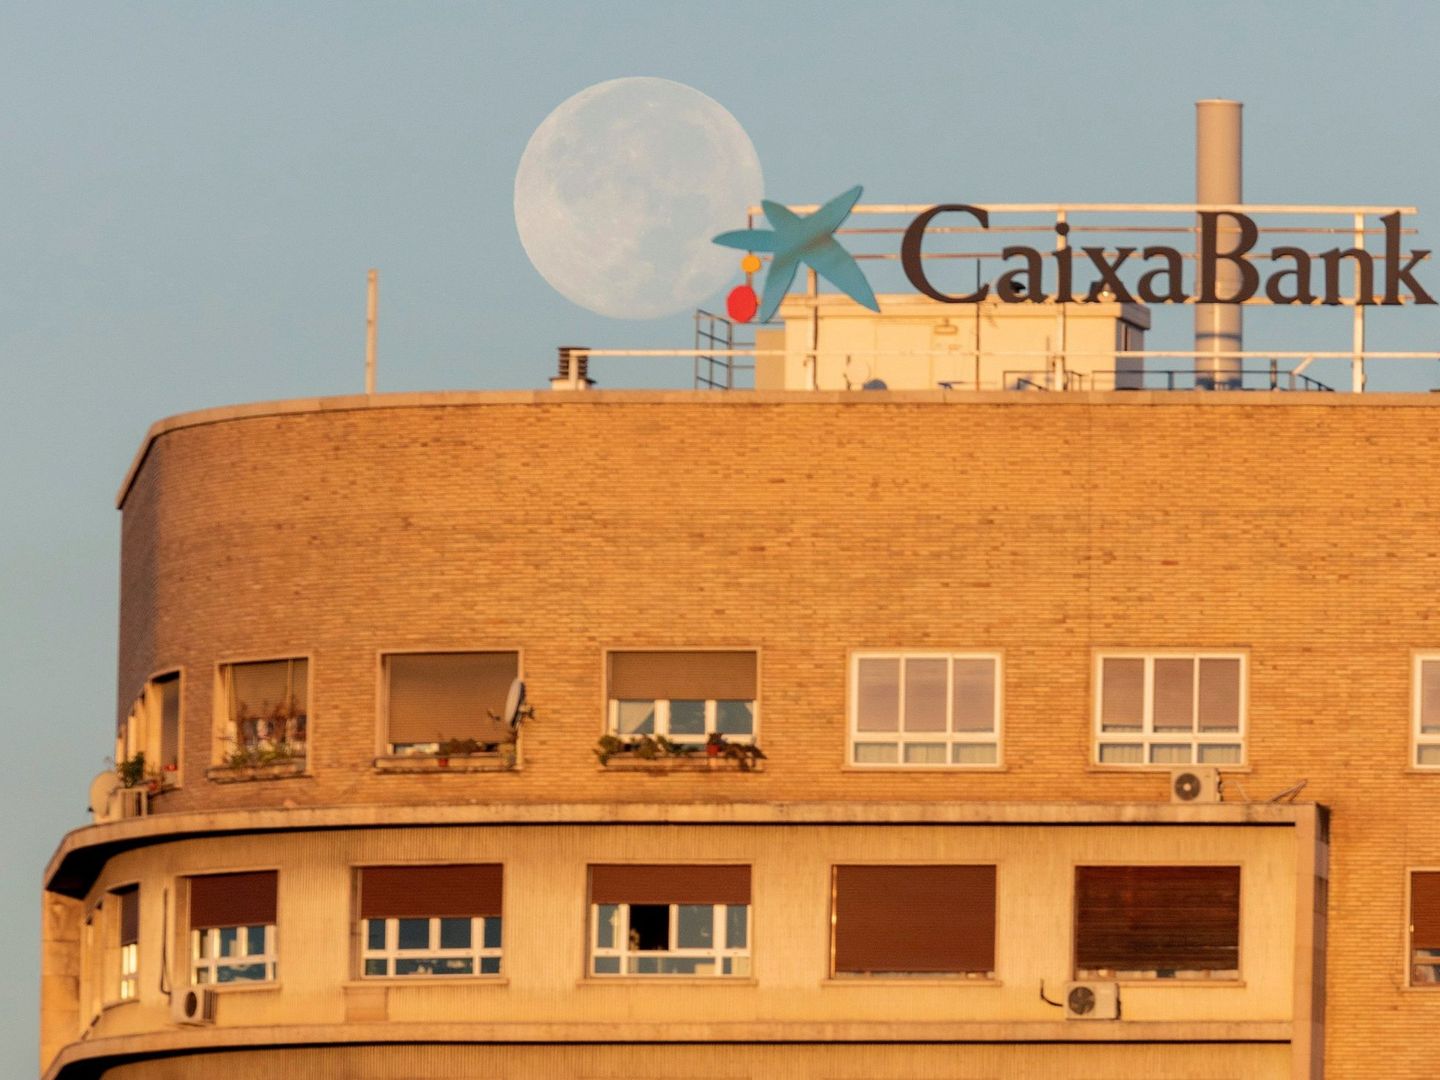 Publicidad de CaixaBank en Zaragoza. (EFE)